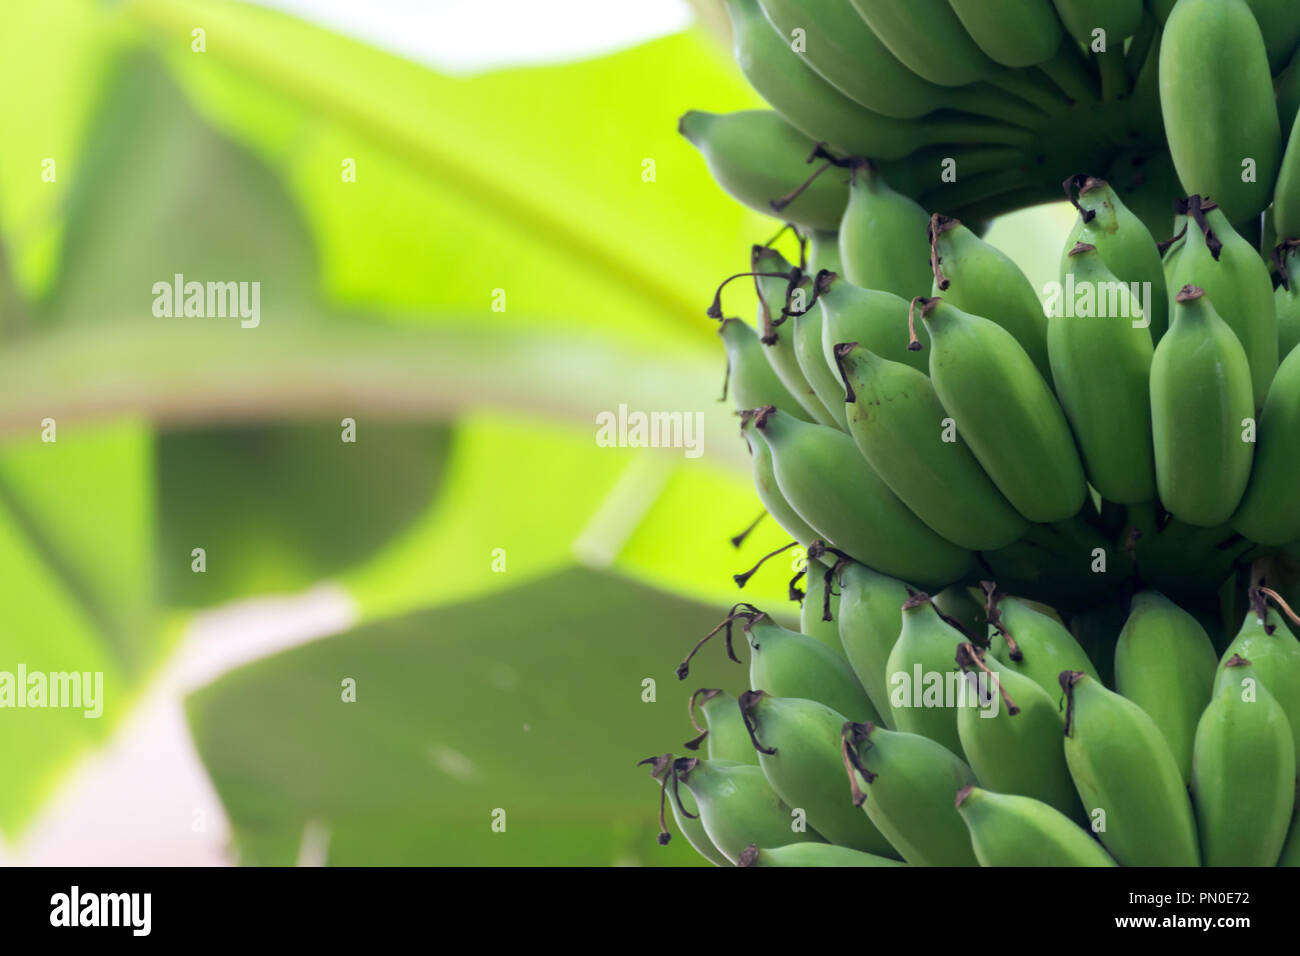 Albero di banana con acerbi materie banane verdi grappoli maturano crescente sulla piantagione di banane organico farm. alimentare e agricolo di concetto. Foto Stock